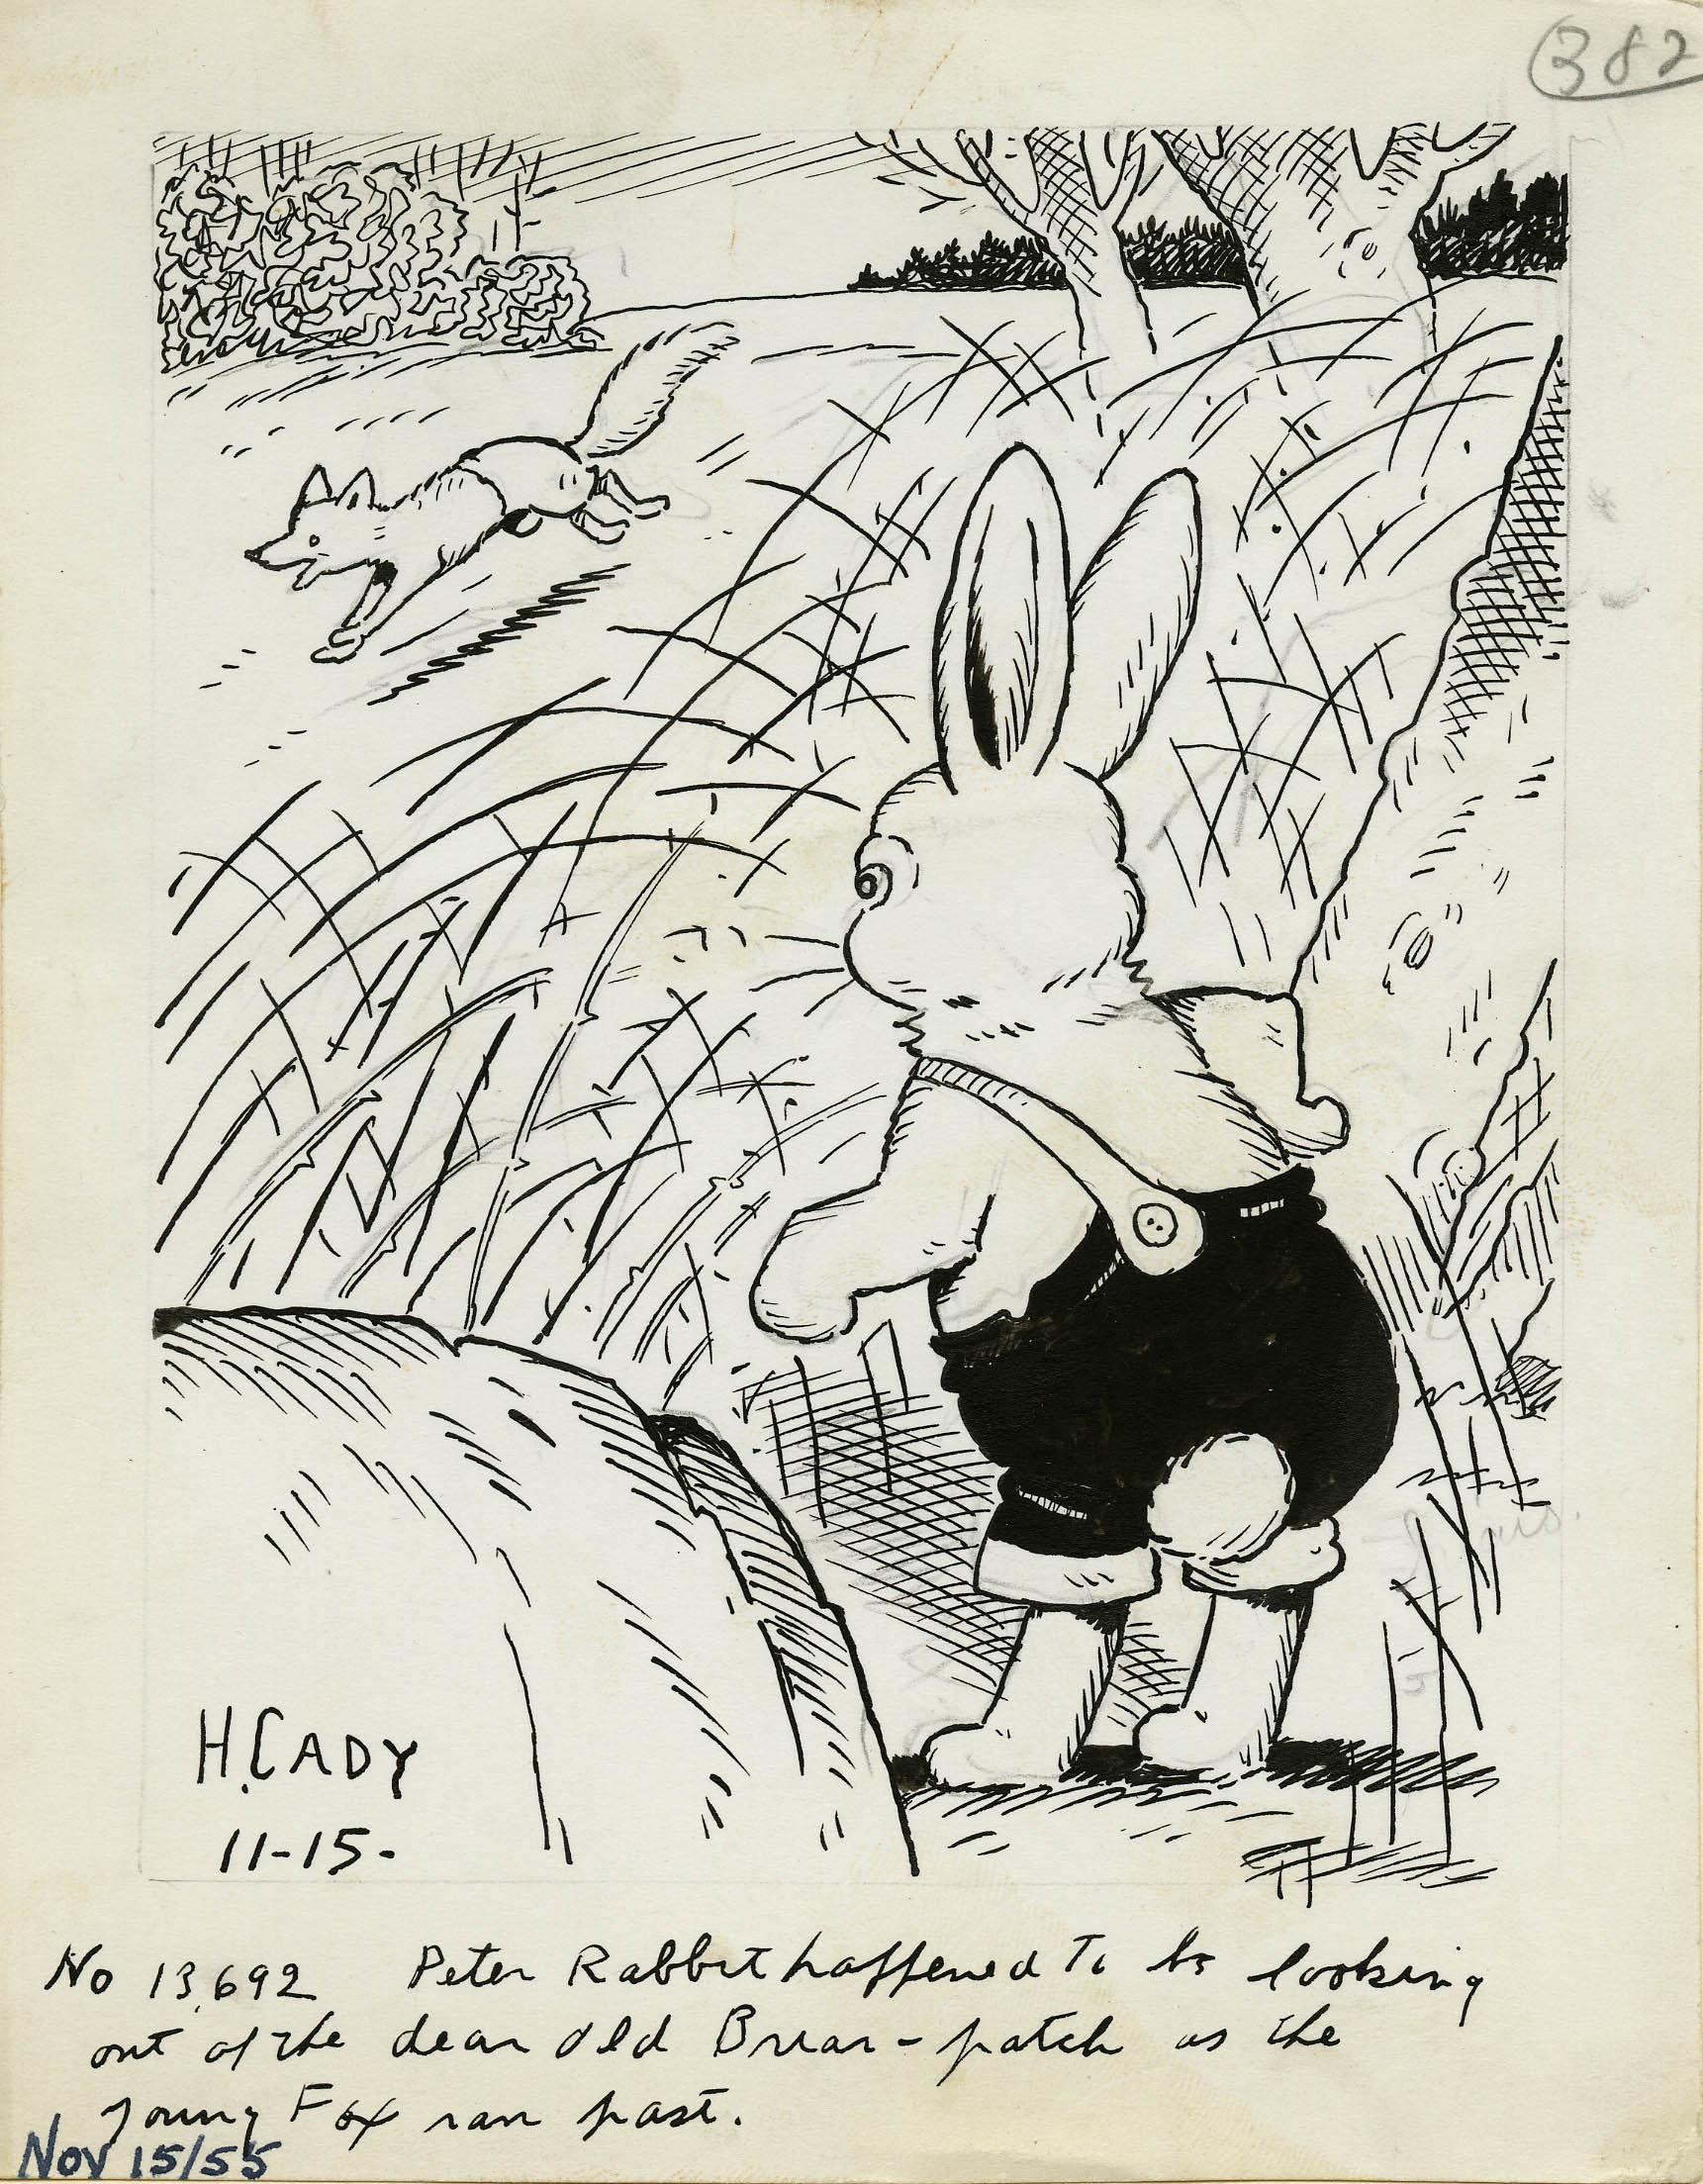 Harrison Cady Animal Art – Peters Kaninchen schaute zufällig aus dem alten Briar-Patch, als der junge